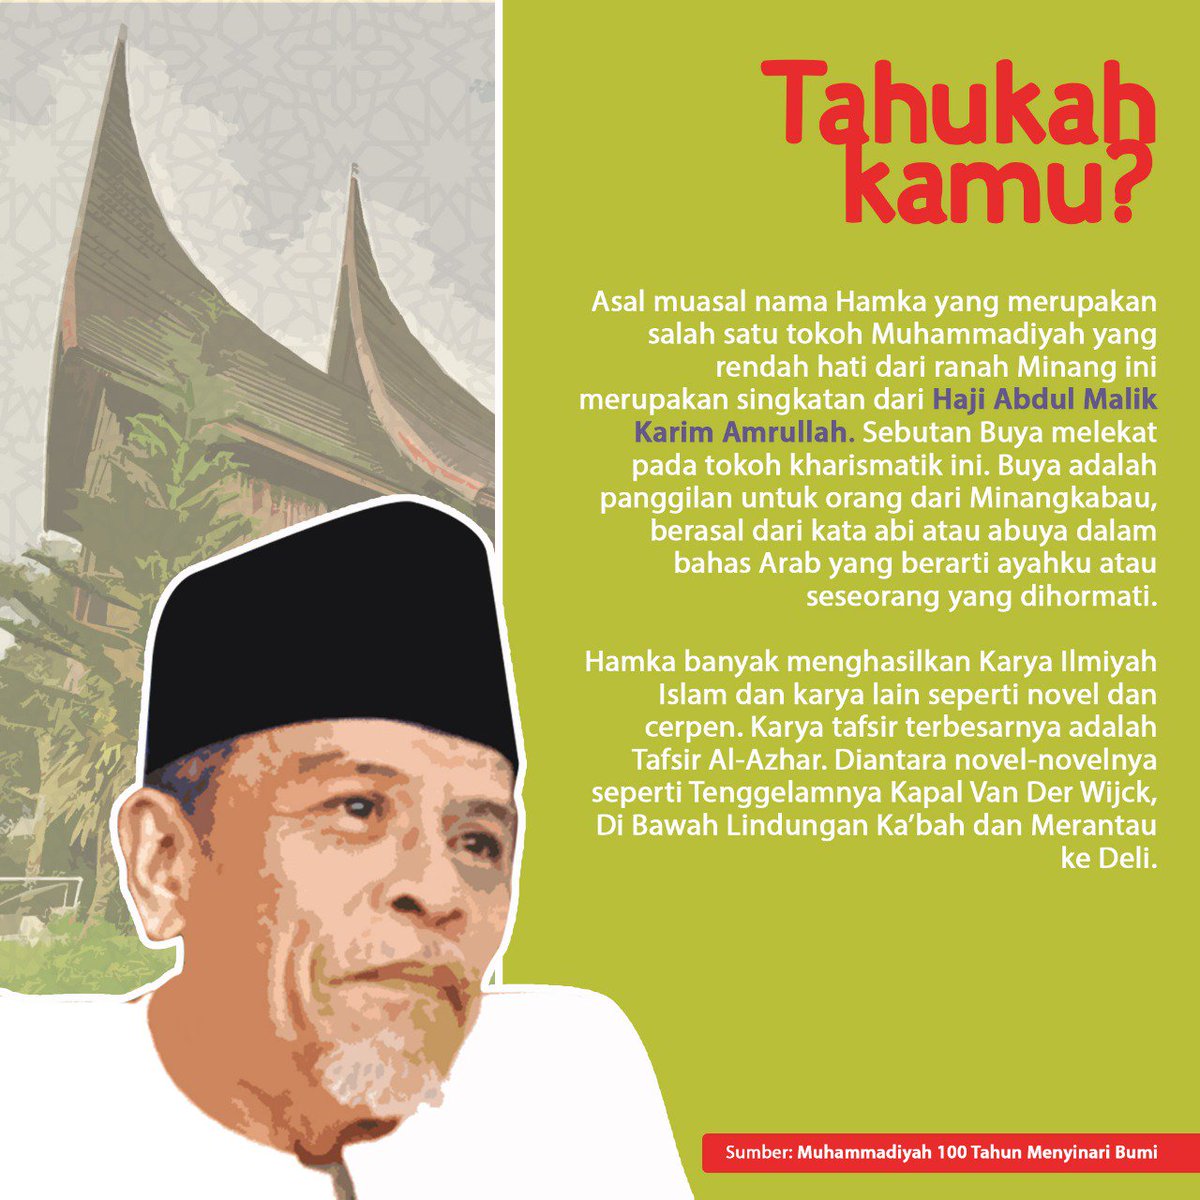 Muhammadiyah On Twitter Asal Muasal Nama Hamka Yang Merupakan